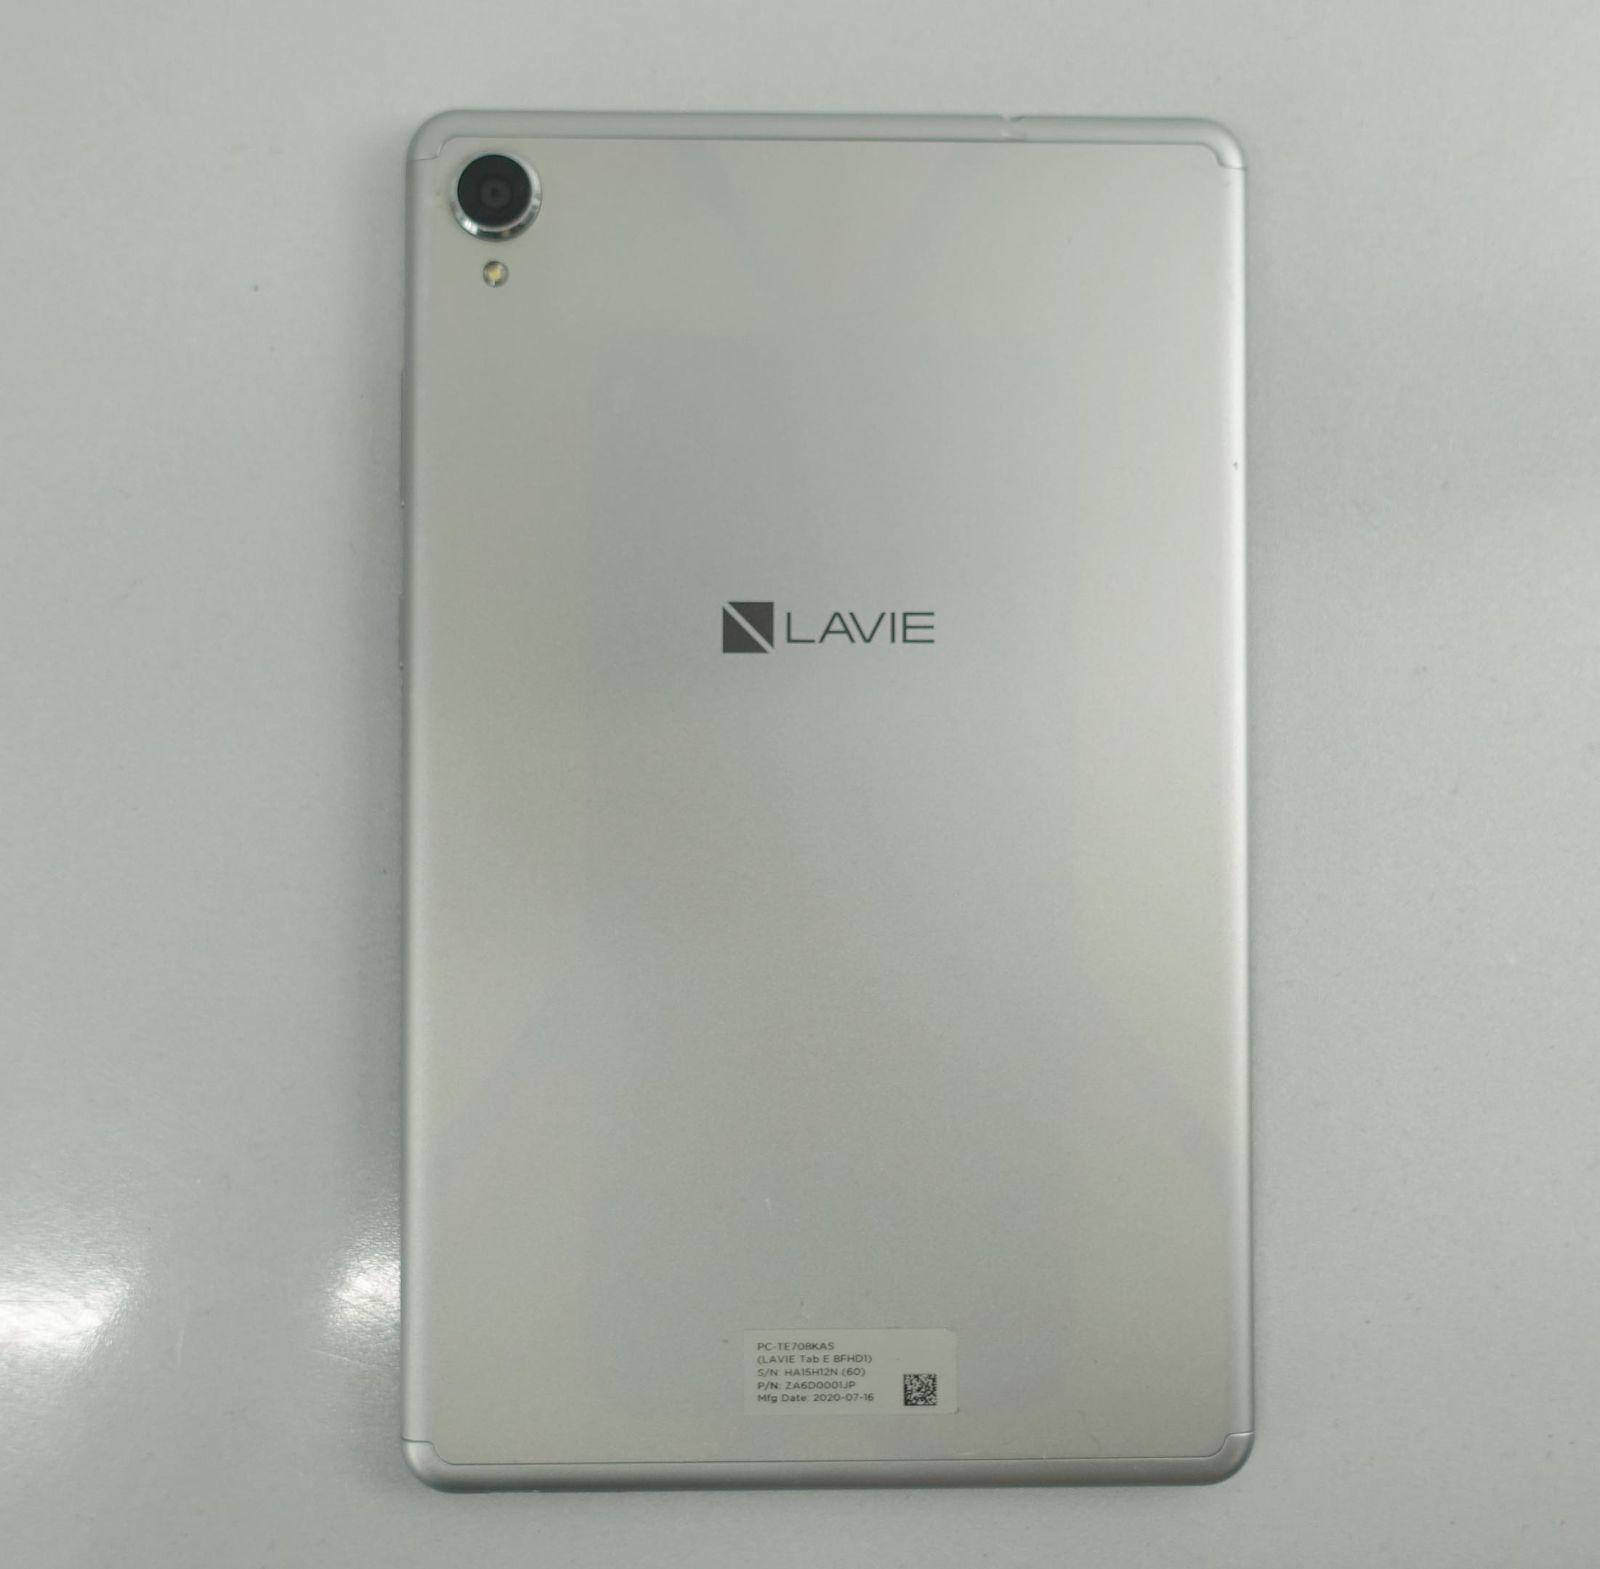 レターパックプラス 箱 付属品付 8インチ NEC LAVIE Tab 8FHD1 PC-TE708KAS Tablet タブレット Wi-Fi  Android 64GB アンドロイド